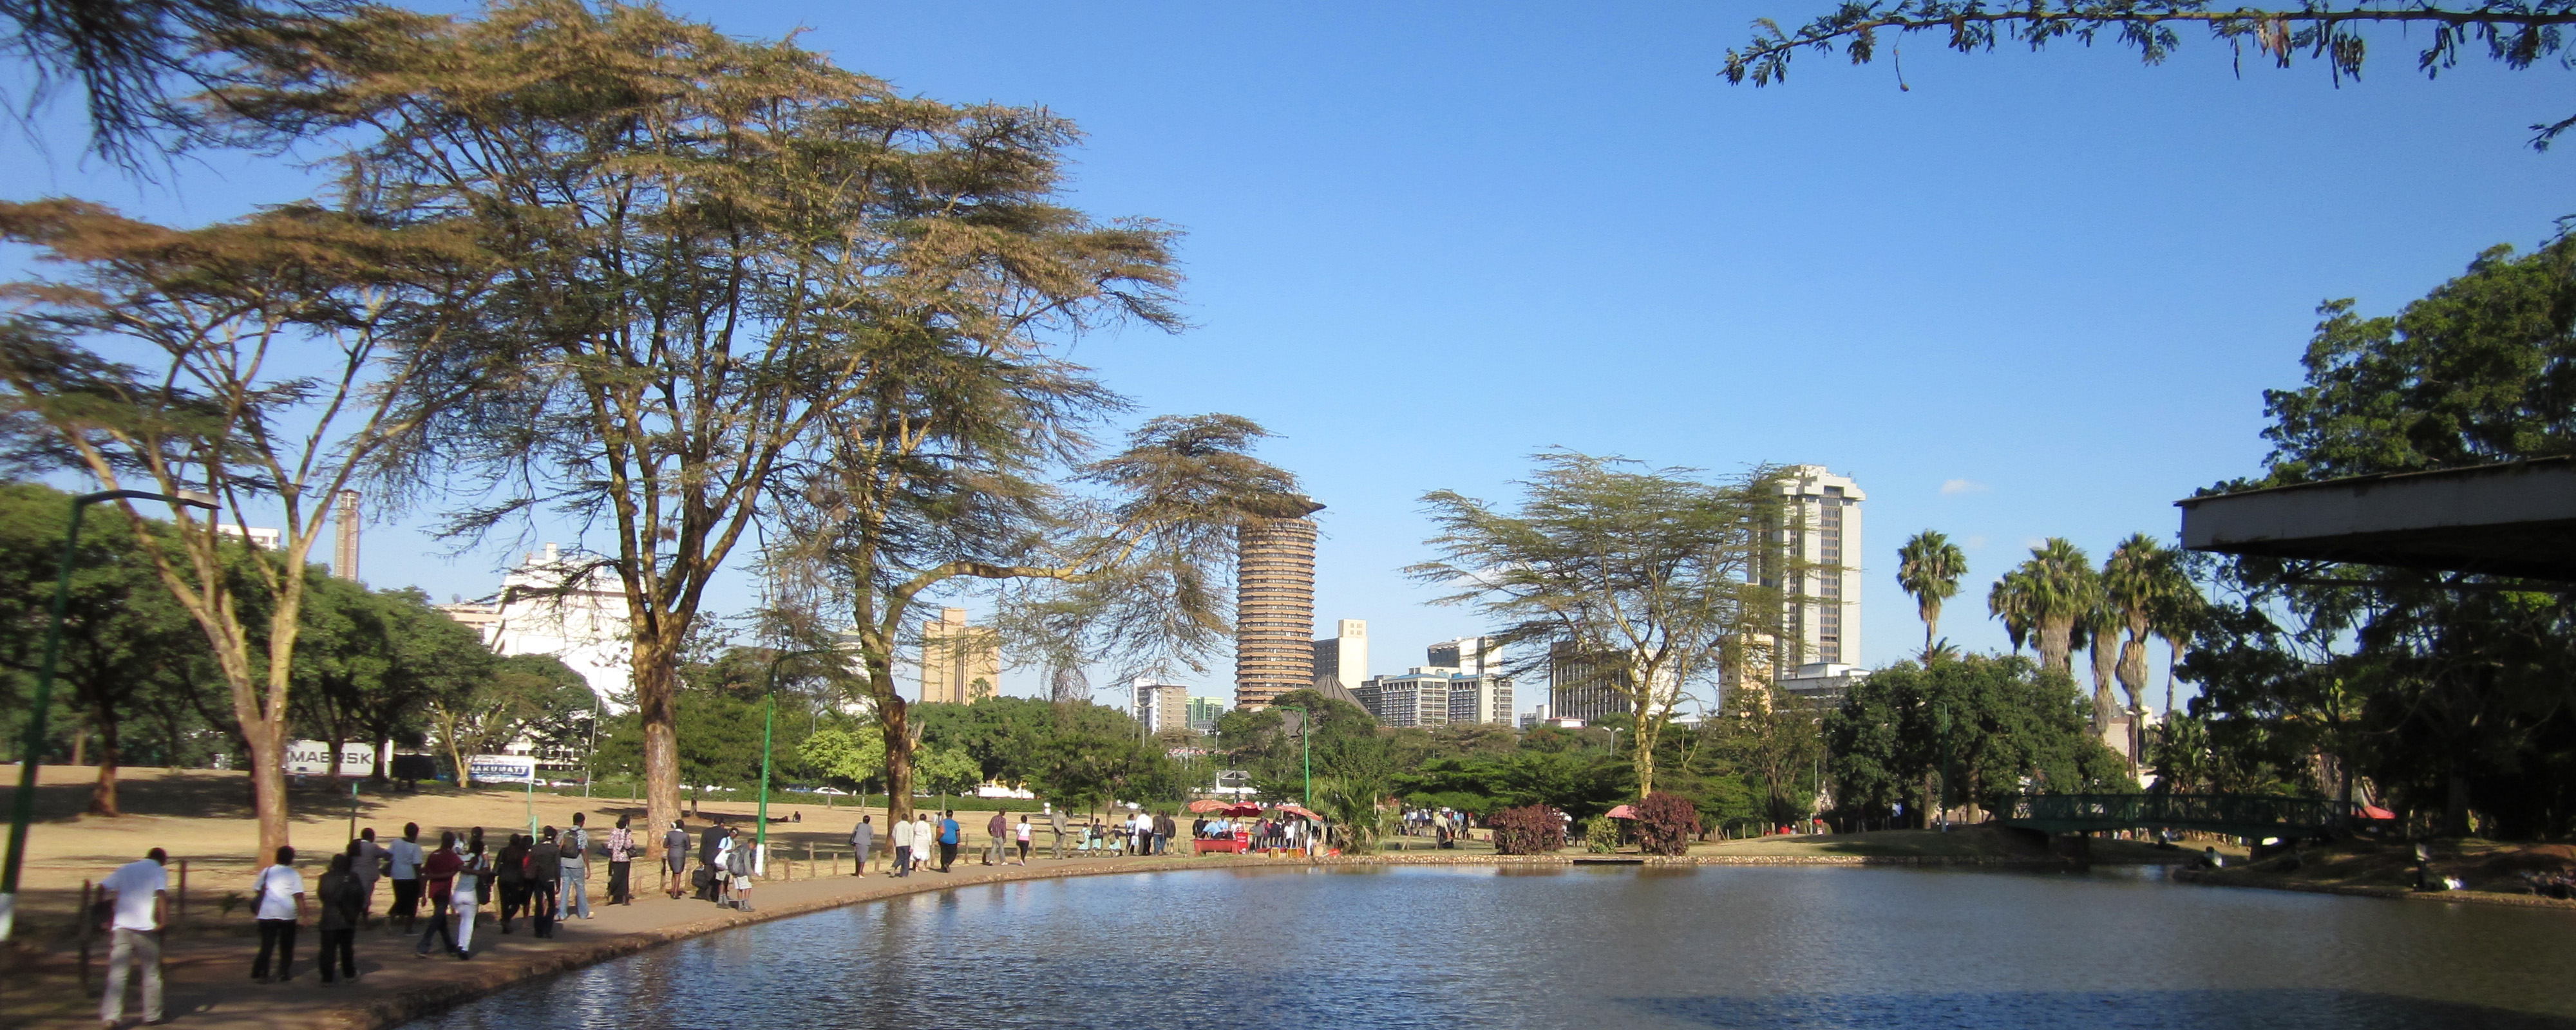 2011.01 Sarre - Kenia Uhuru Park in Nairobi